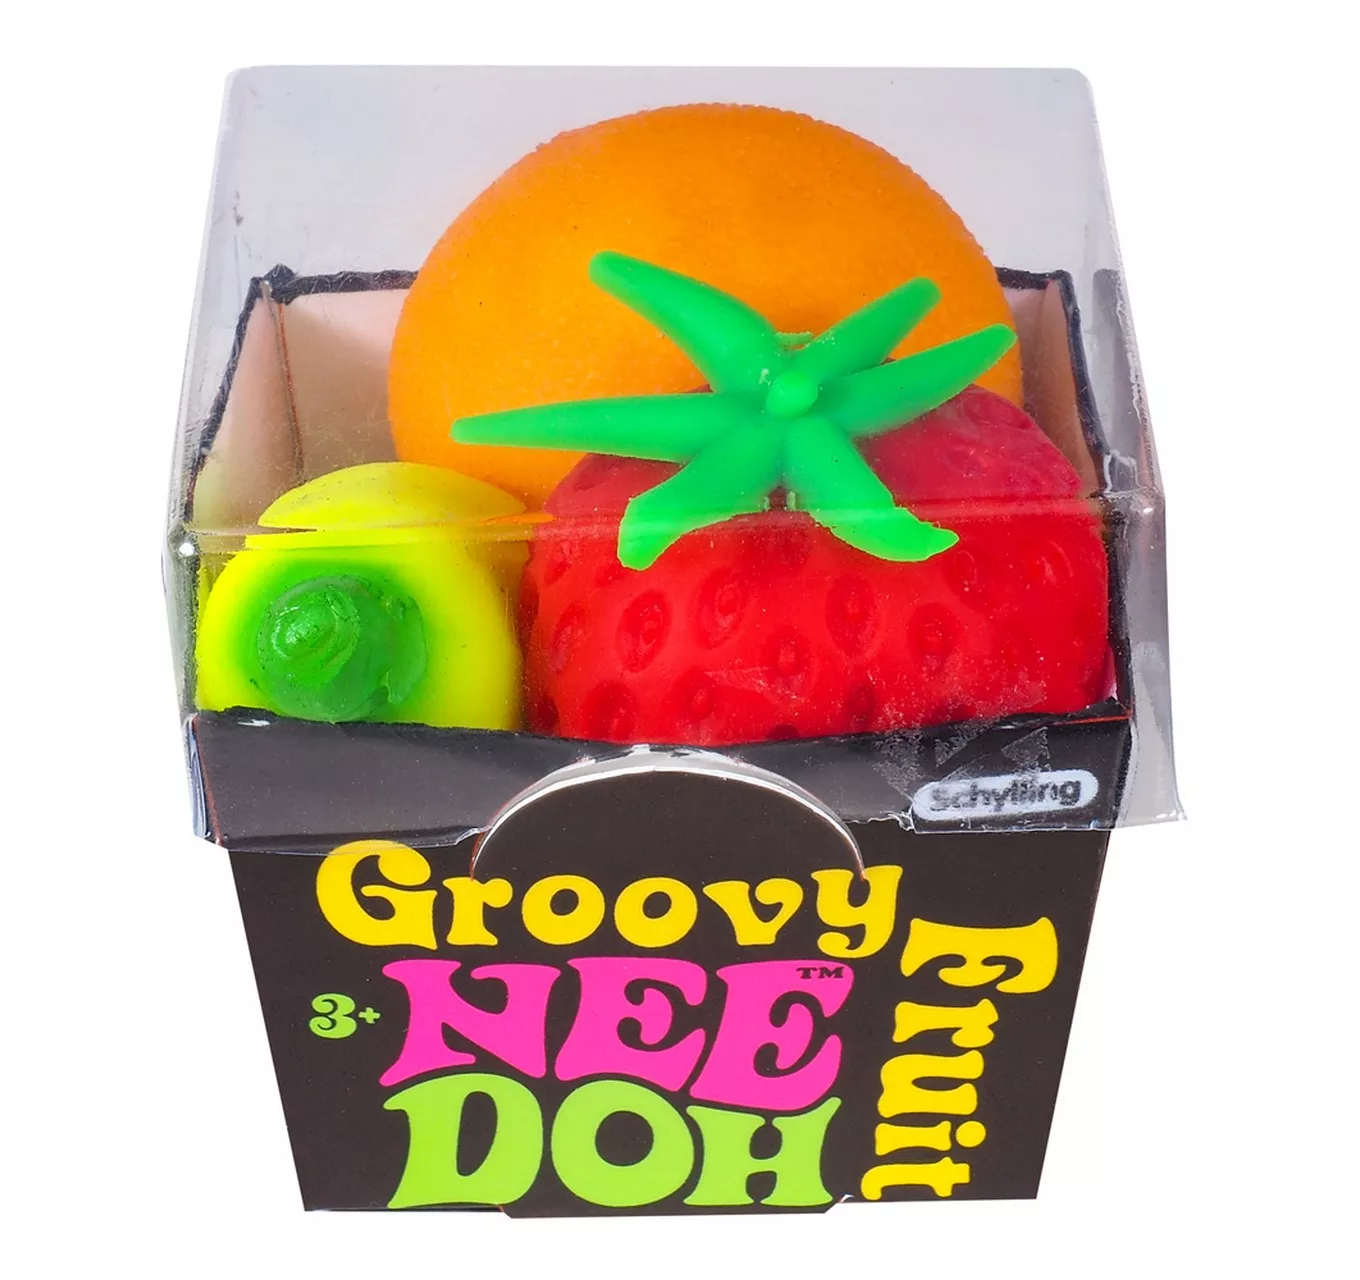 Groovy Fruit Needoh